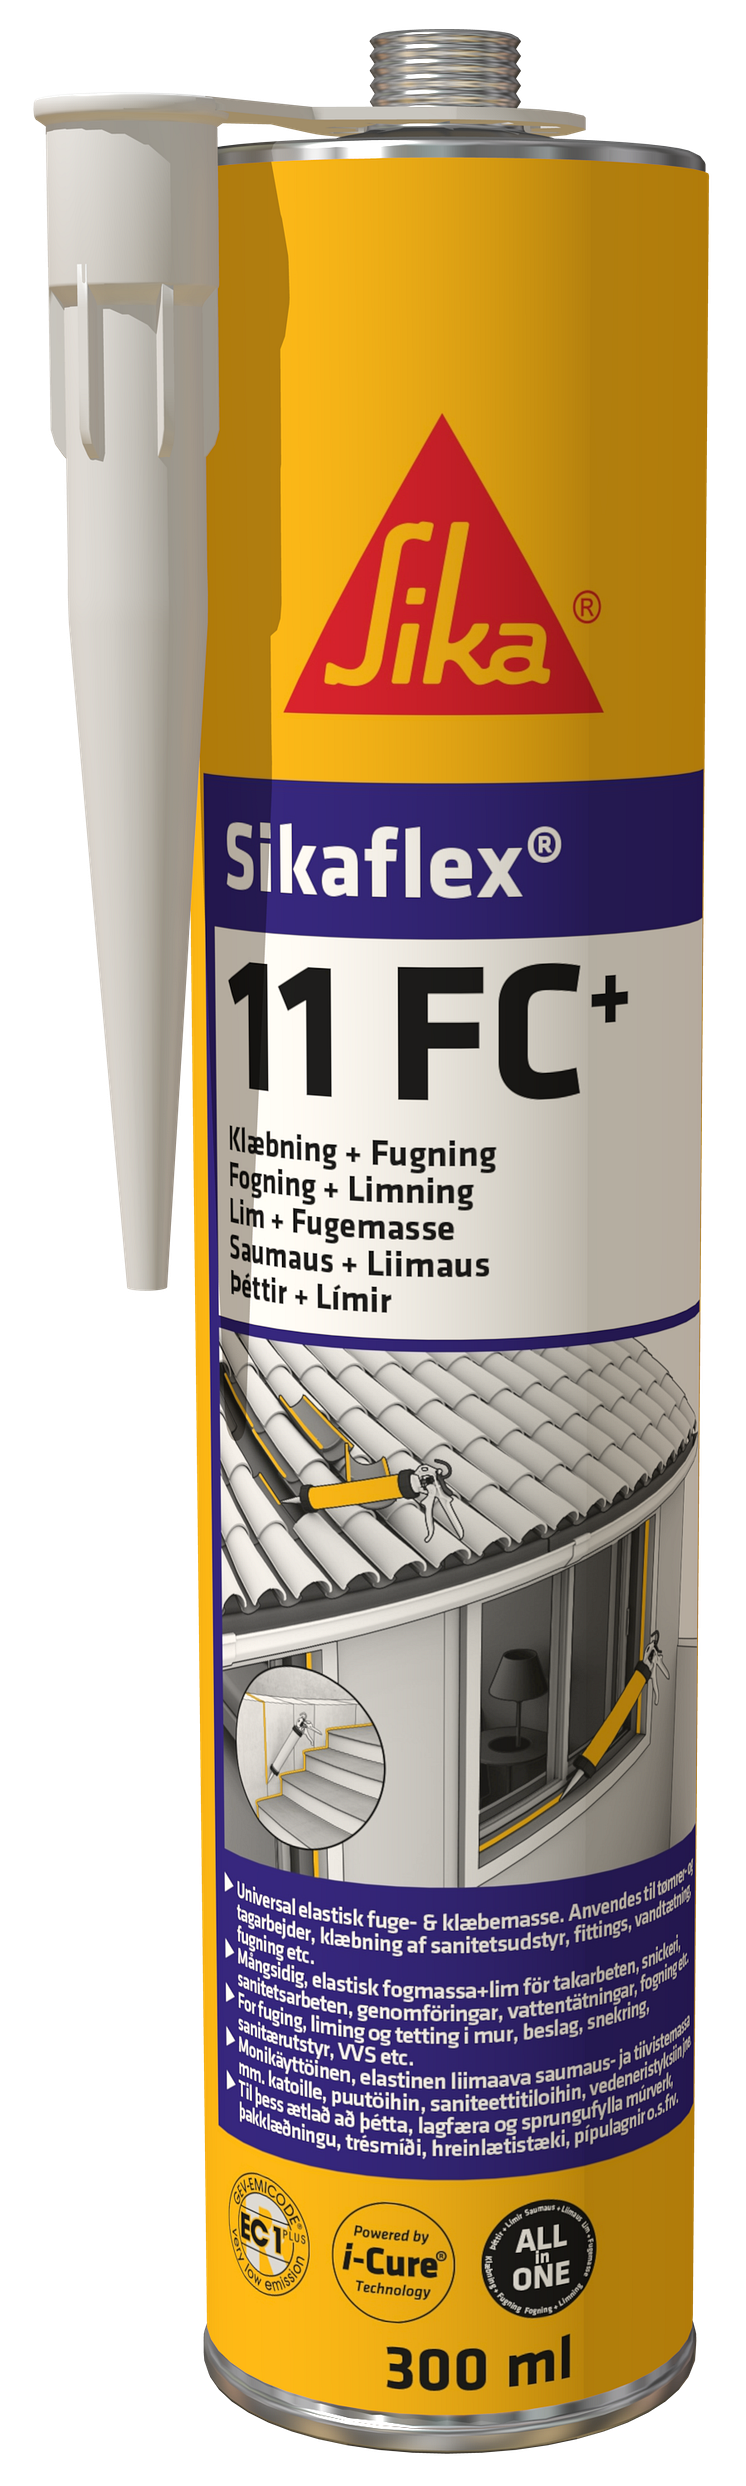 Sikaflex-11 FC+300 ml